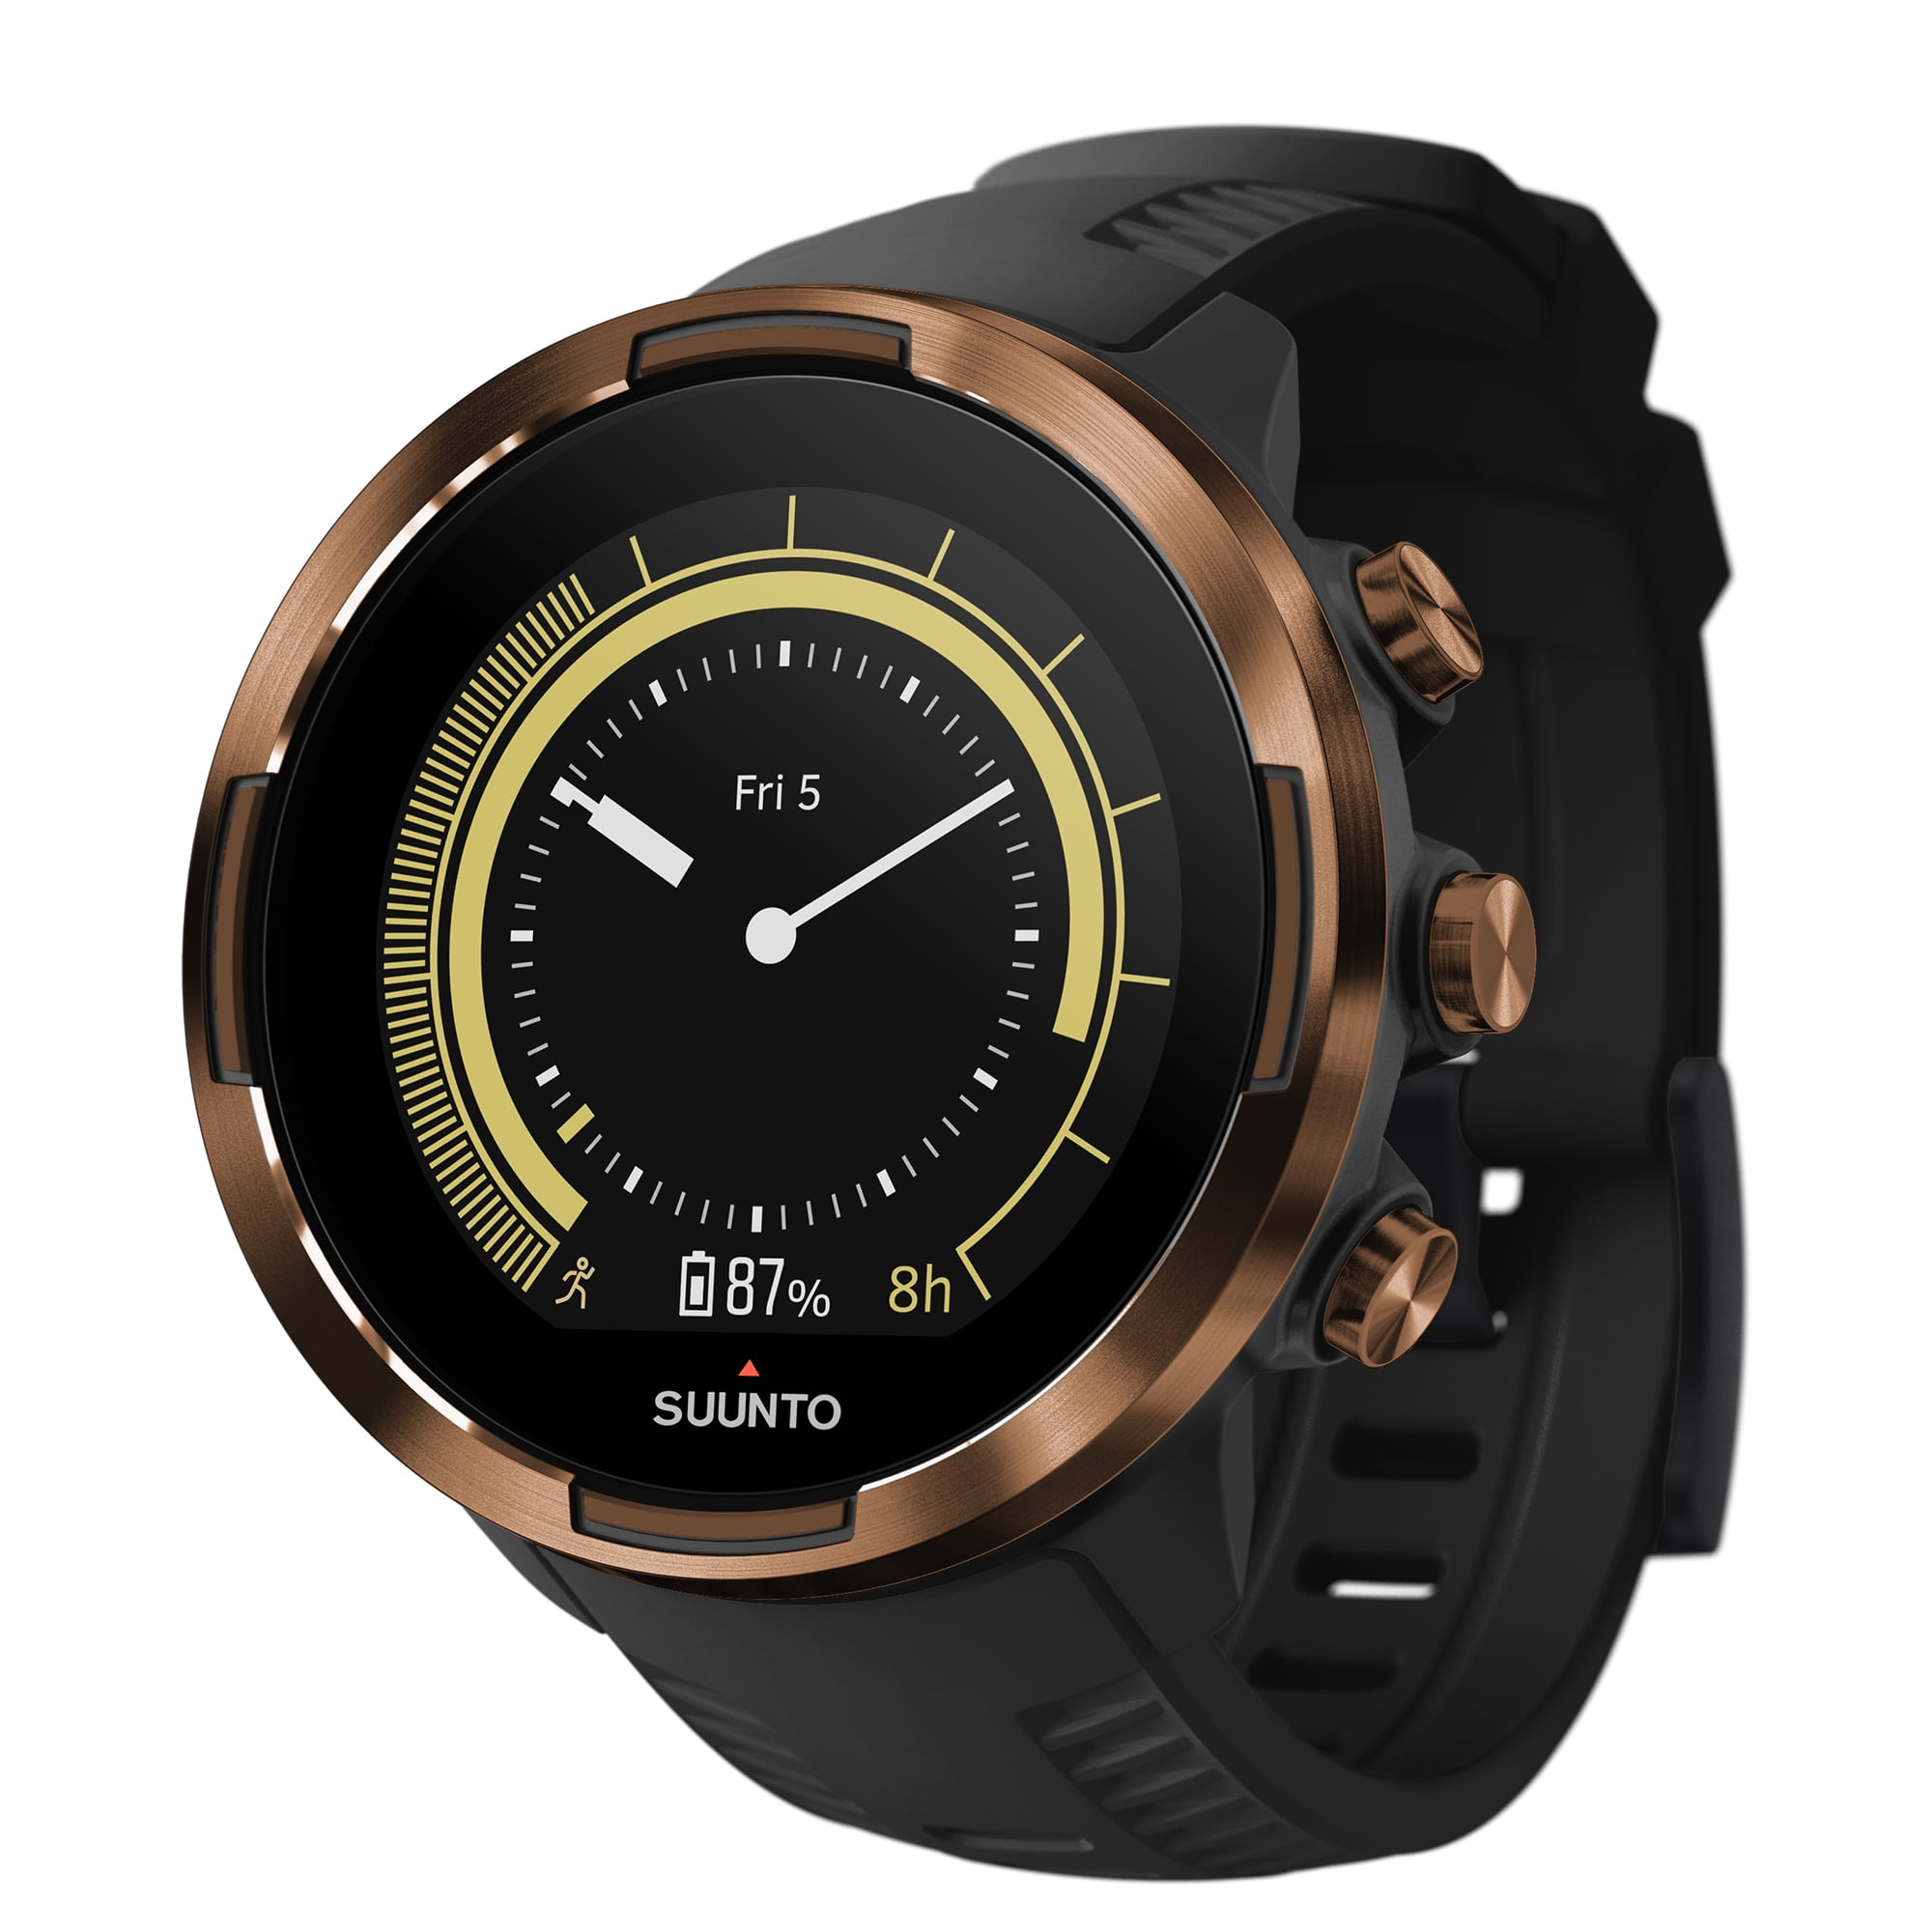 Suunto Suunto 9 G1 Baro - Multi-function watch, Buy online